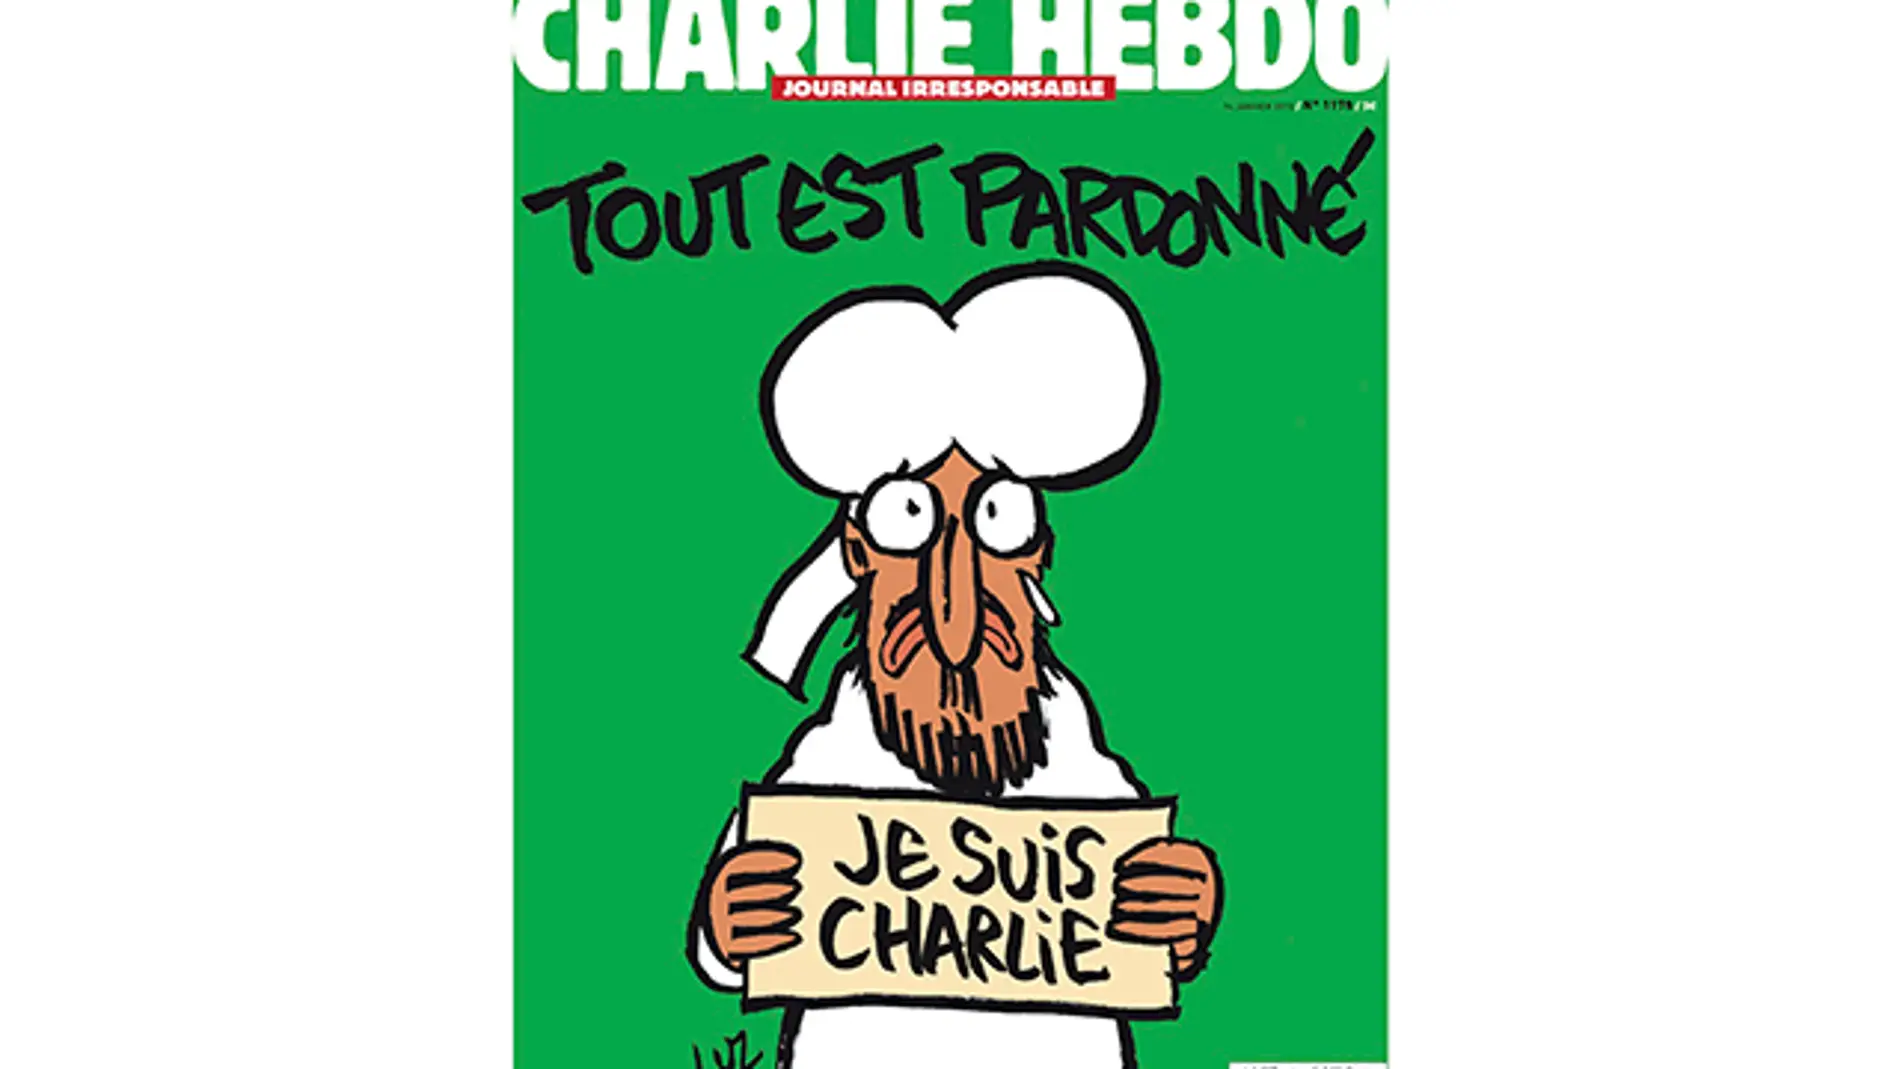 Charlie Hebdo perdona en su portada tras los ataques yihadistas